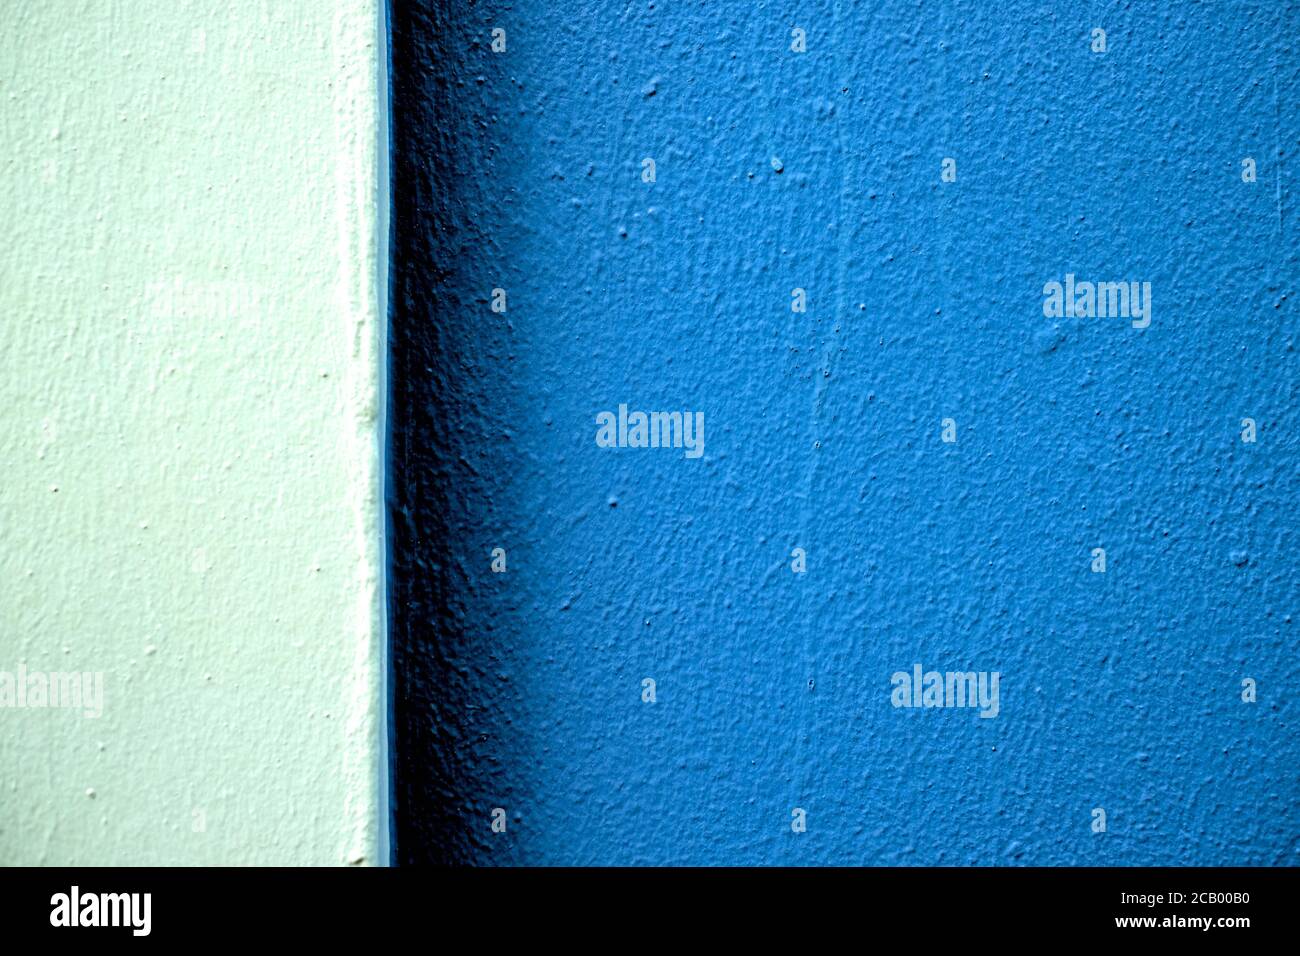 Zwei Töne von blauen Farbbändern auf einer frisch bemalten Wand in hartem Licht, versetzt mit großem dunkleren Teil. Stockfoto